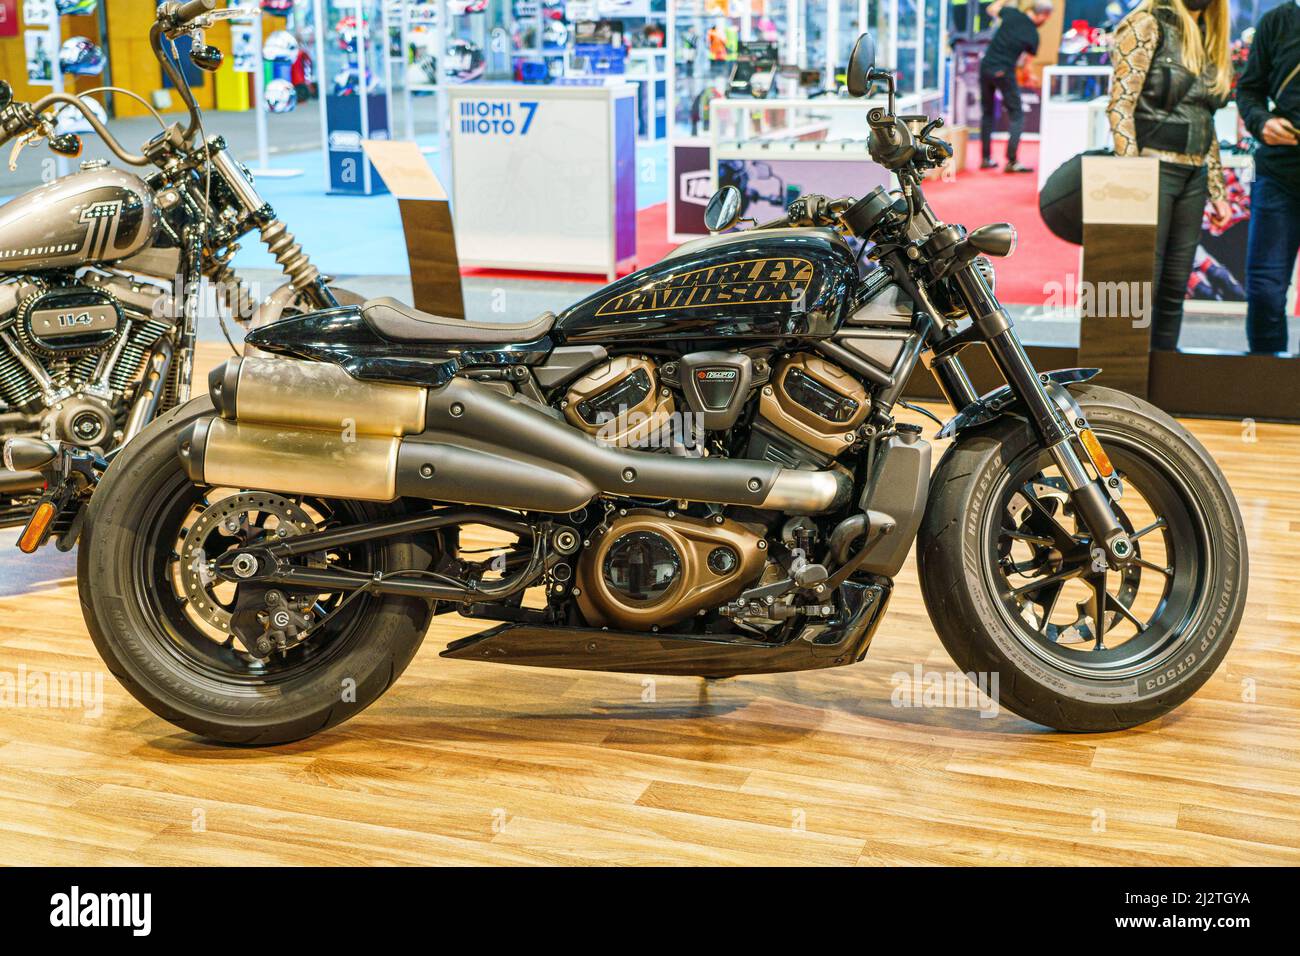 La marca de motocicletas Harley Havidson modelo Sportster S se exhibe en la  feria LIVE the MOTO (Vive la Moto) de Madrid. El espectáculo Vive la Moto  es la segunda edición del